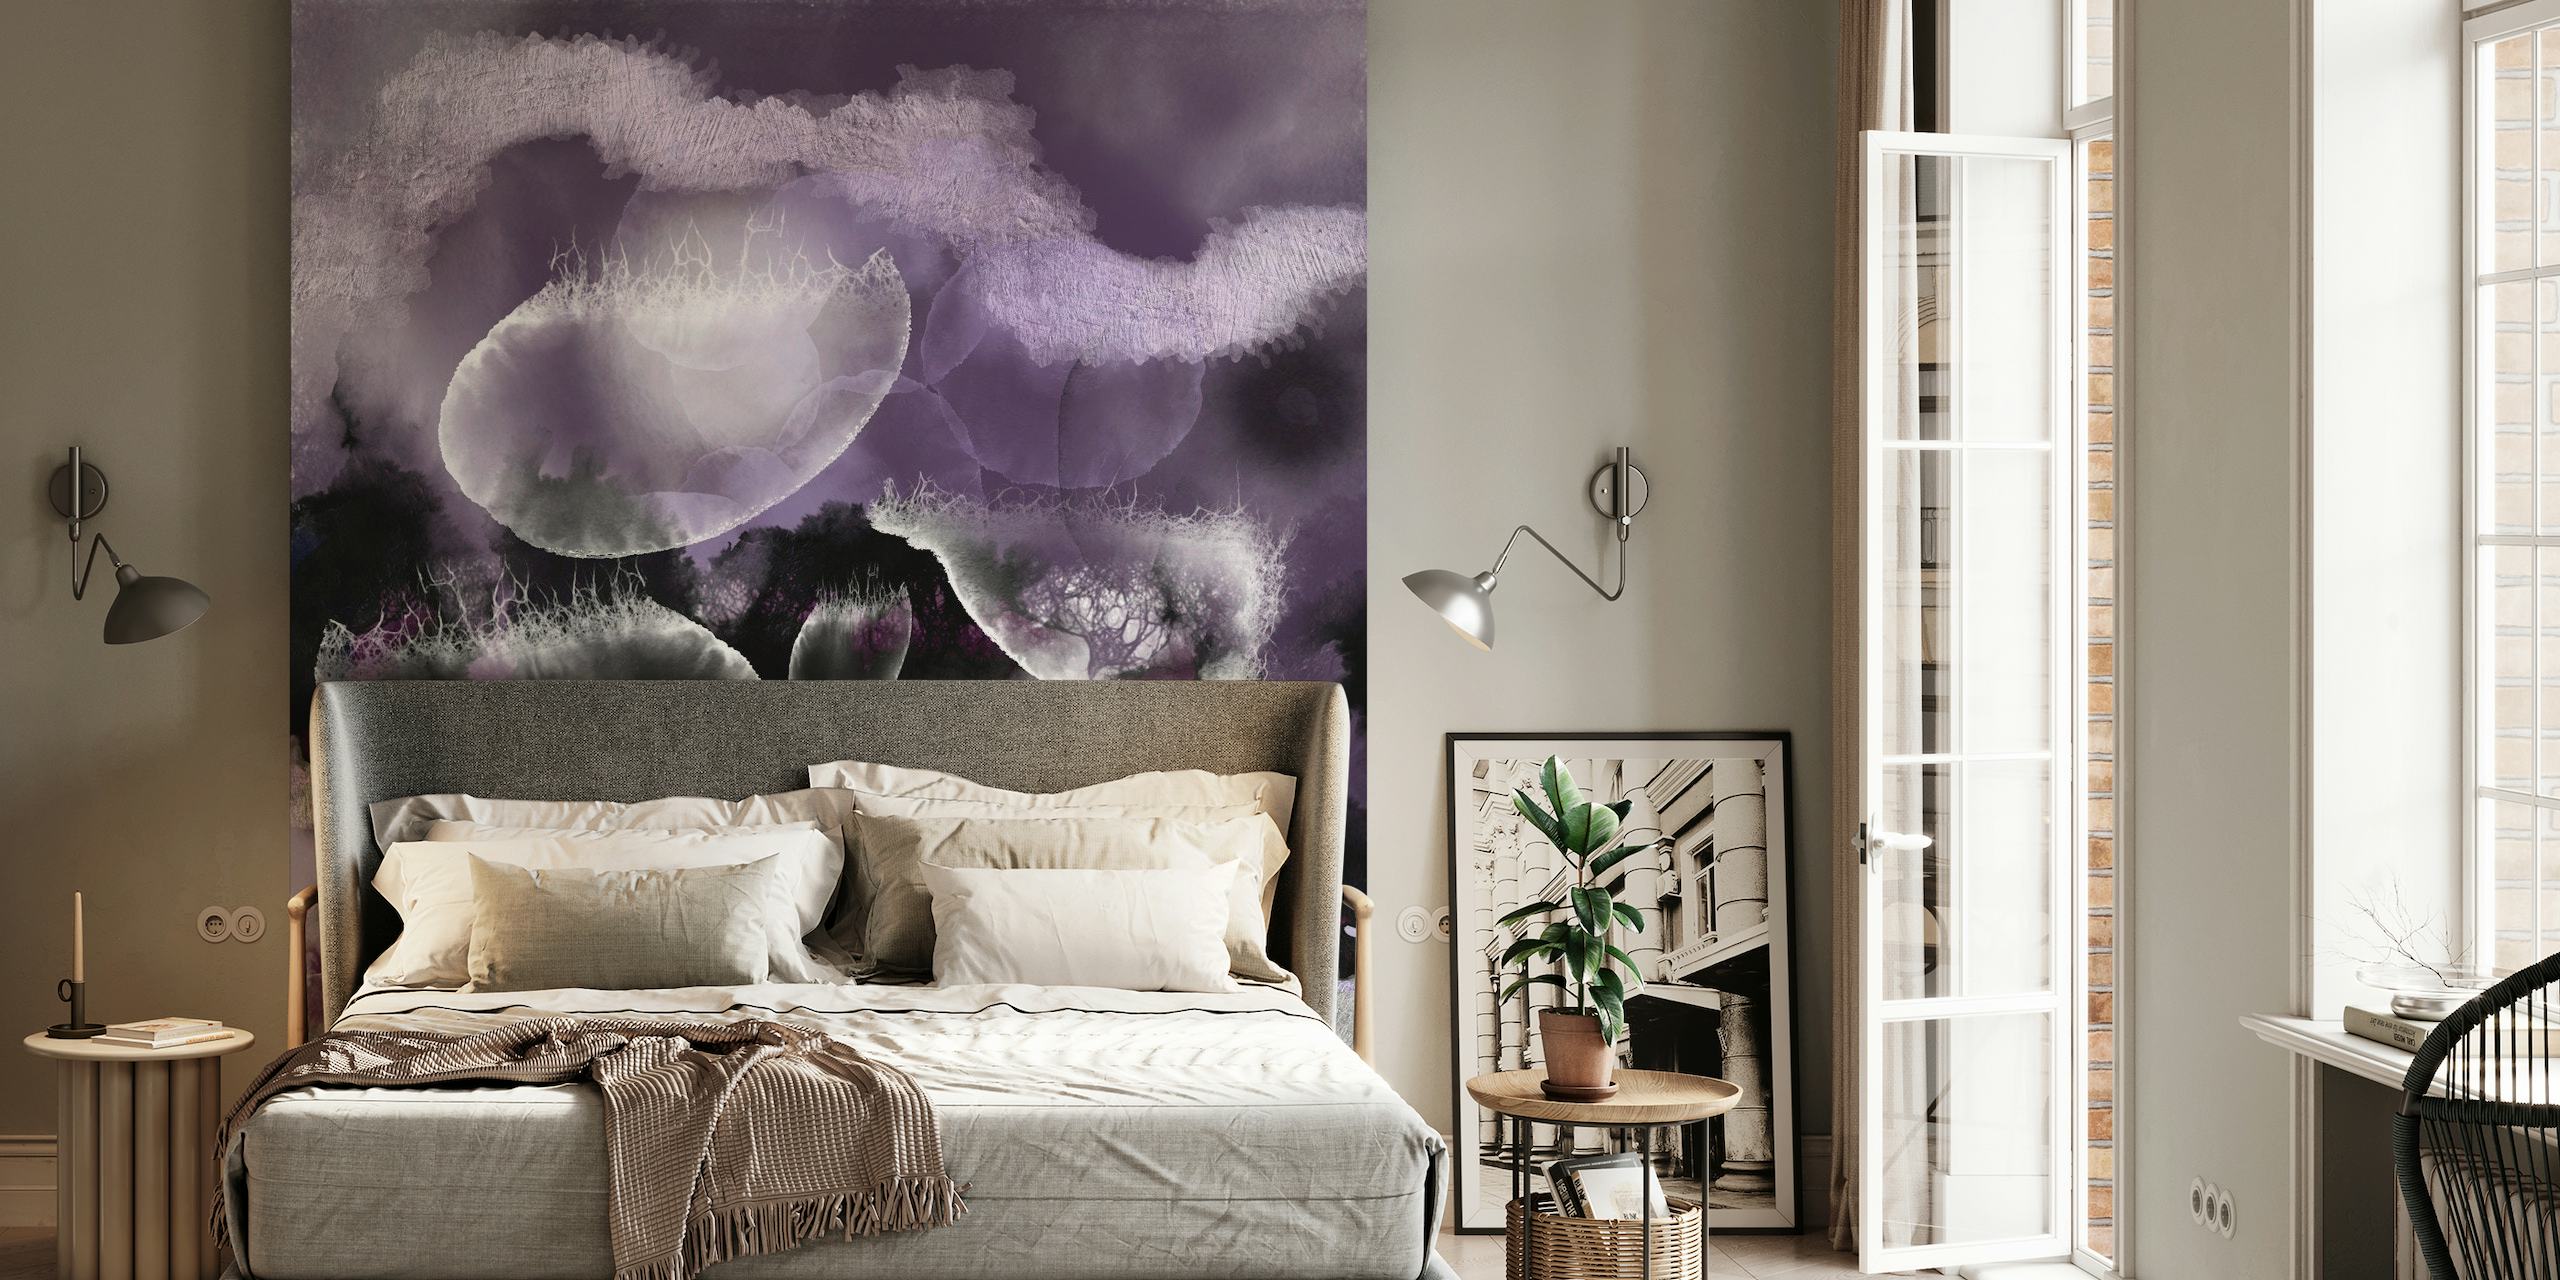 Papier peint mural abstrait inspiré de l'océan dans des tons violets avec des motifs éthérés ressemblant à des fonds marins